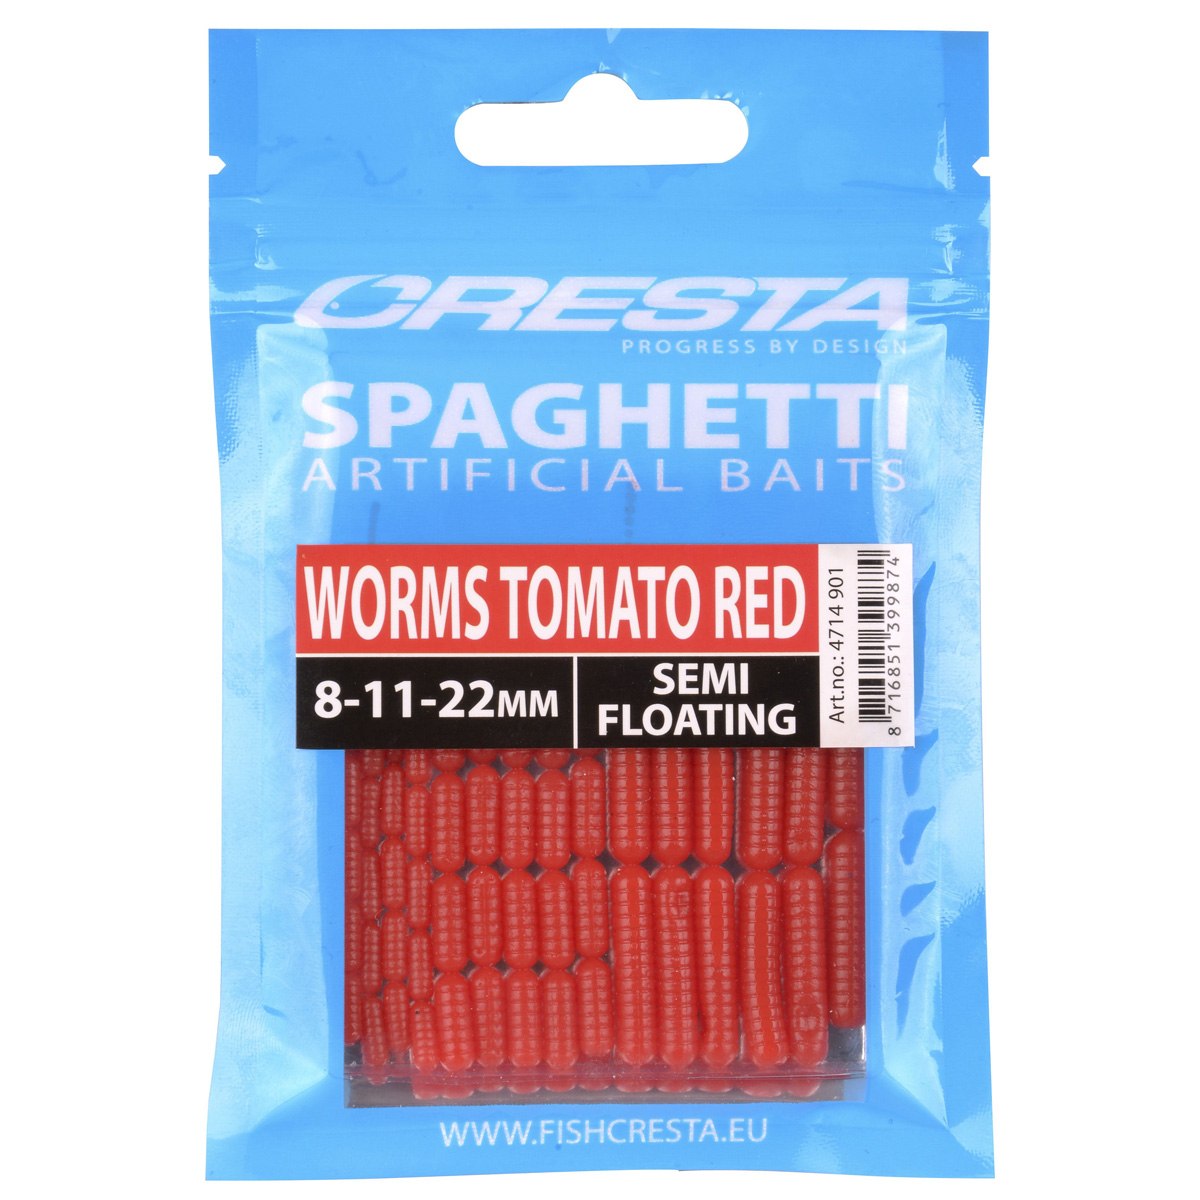 Cresta Spaghetti Worms - Tomato Red